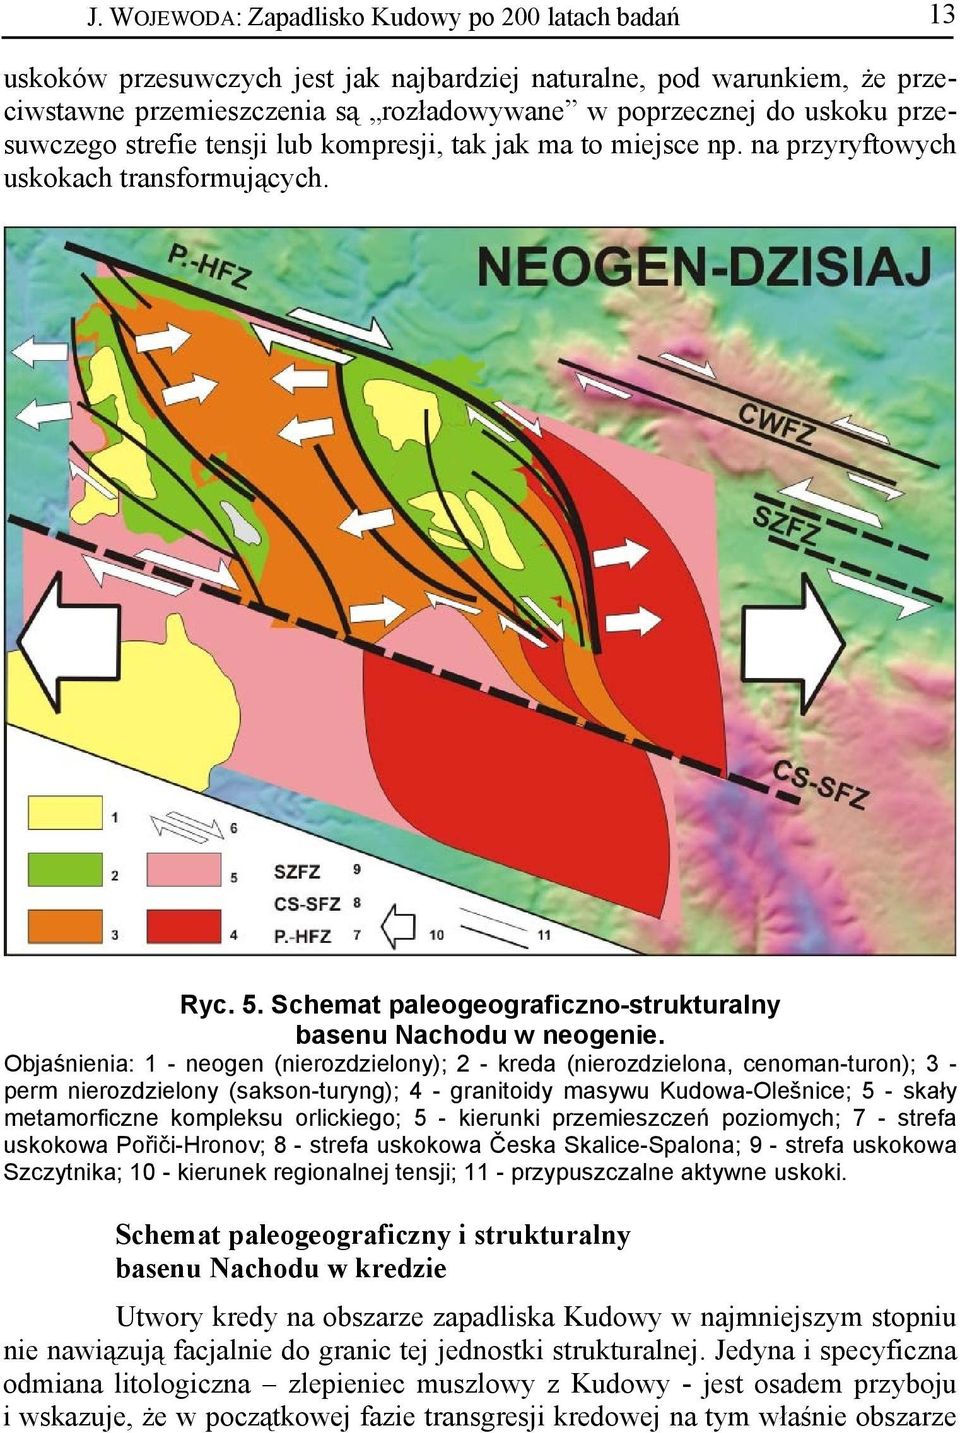 Objaśnienia: 1 - neogen (nierozdzielony); 2 - kreda (nierozdzielona, cenoman-turon); 3 - perm nierozdzielony (sakson-turyng); 4 - granitoidy masywu Kudowa-Olešnice; 5 - skały metamorficzne kompleksu